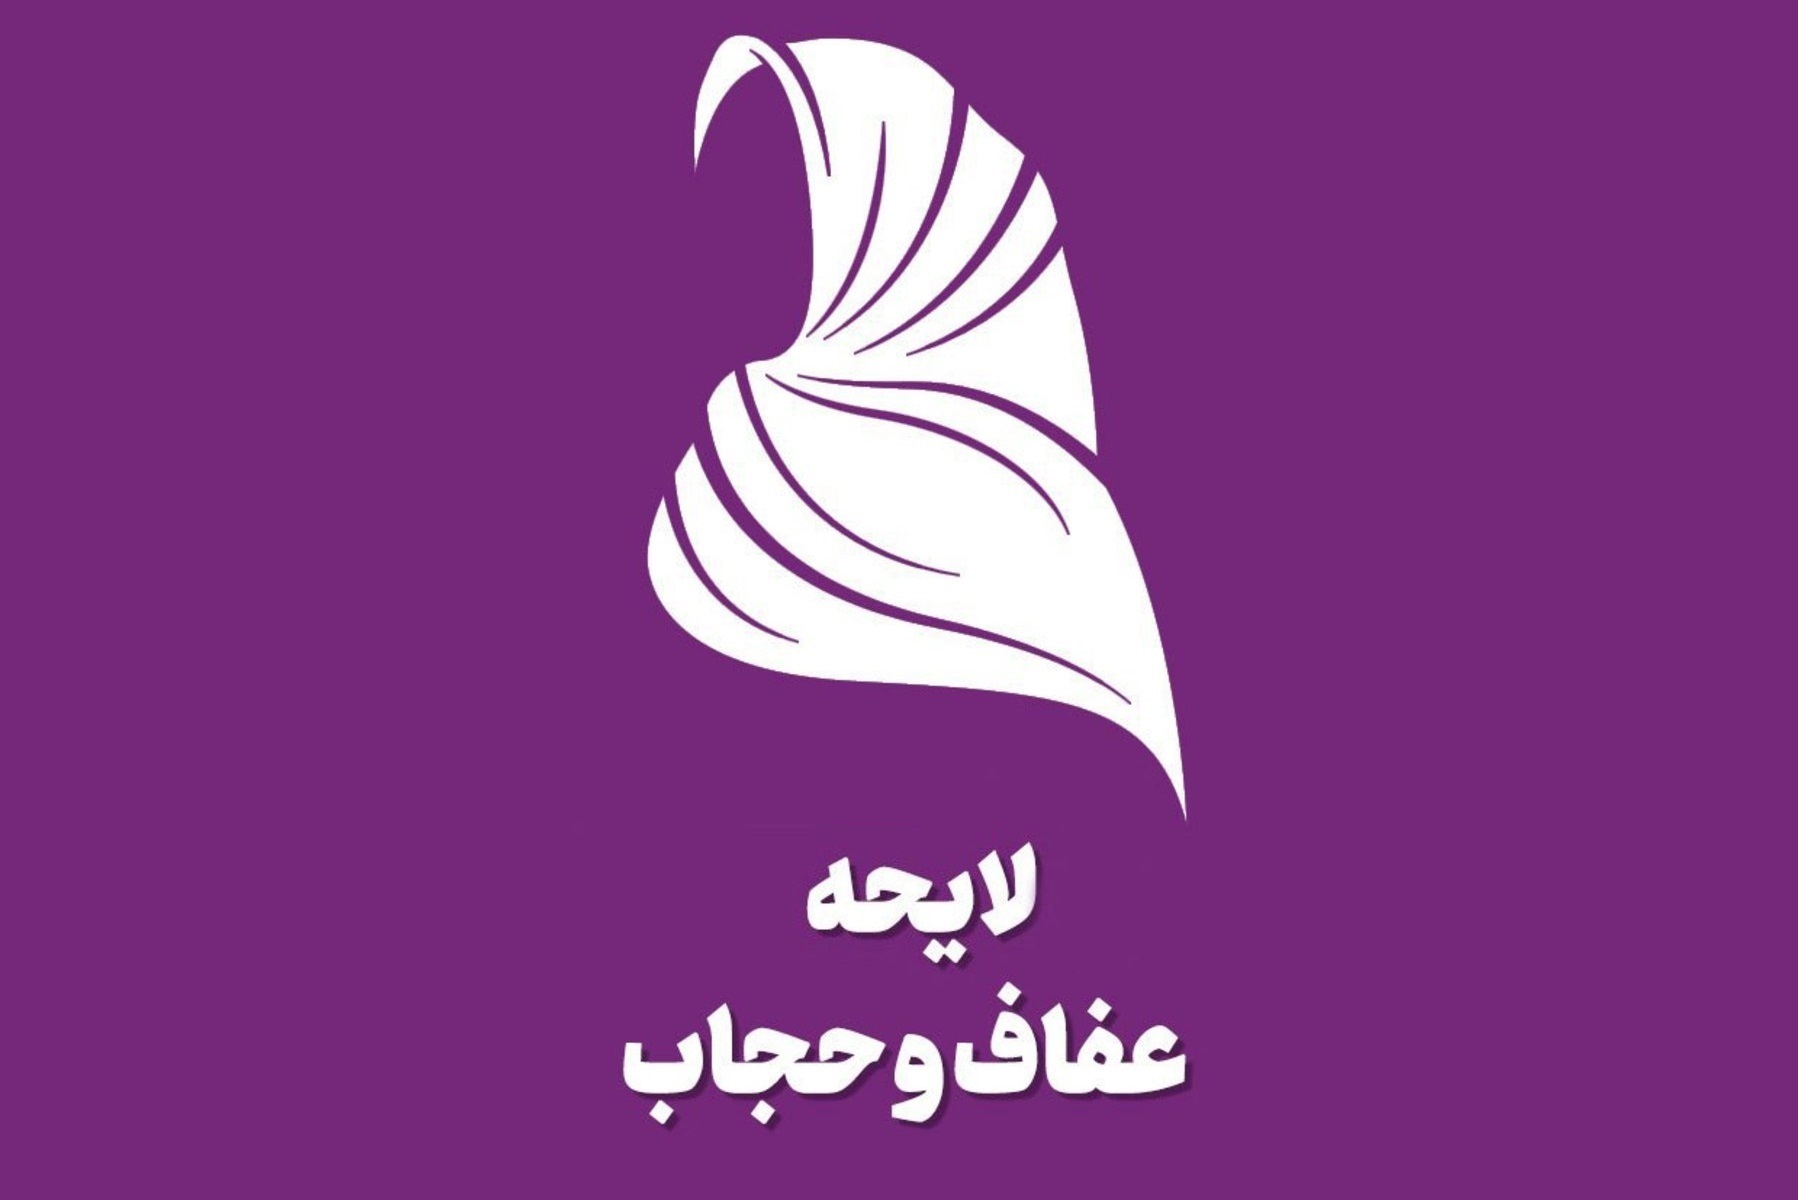 مخالفت مجمع تشخیص با لایحه عفاف و حجاب